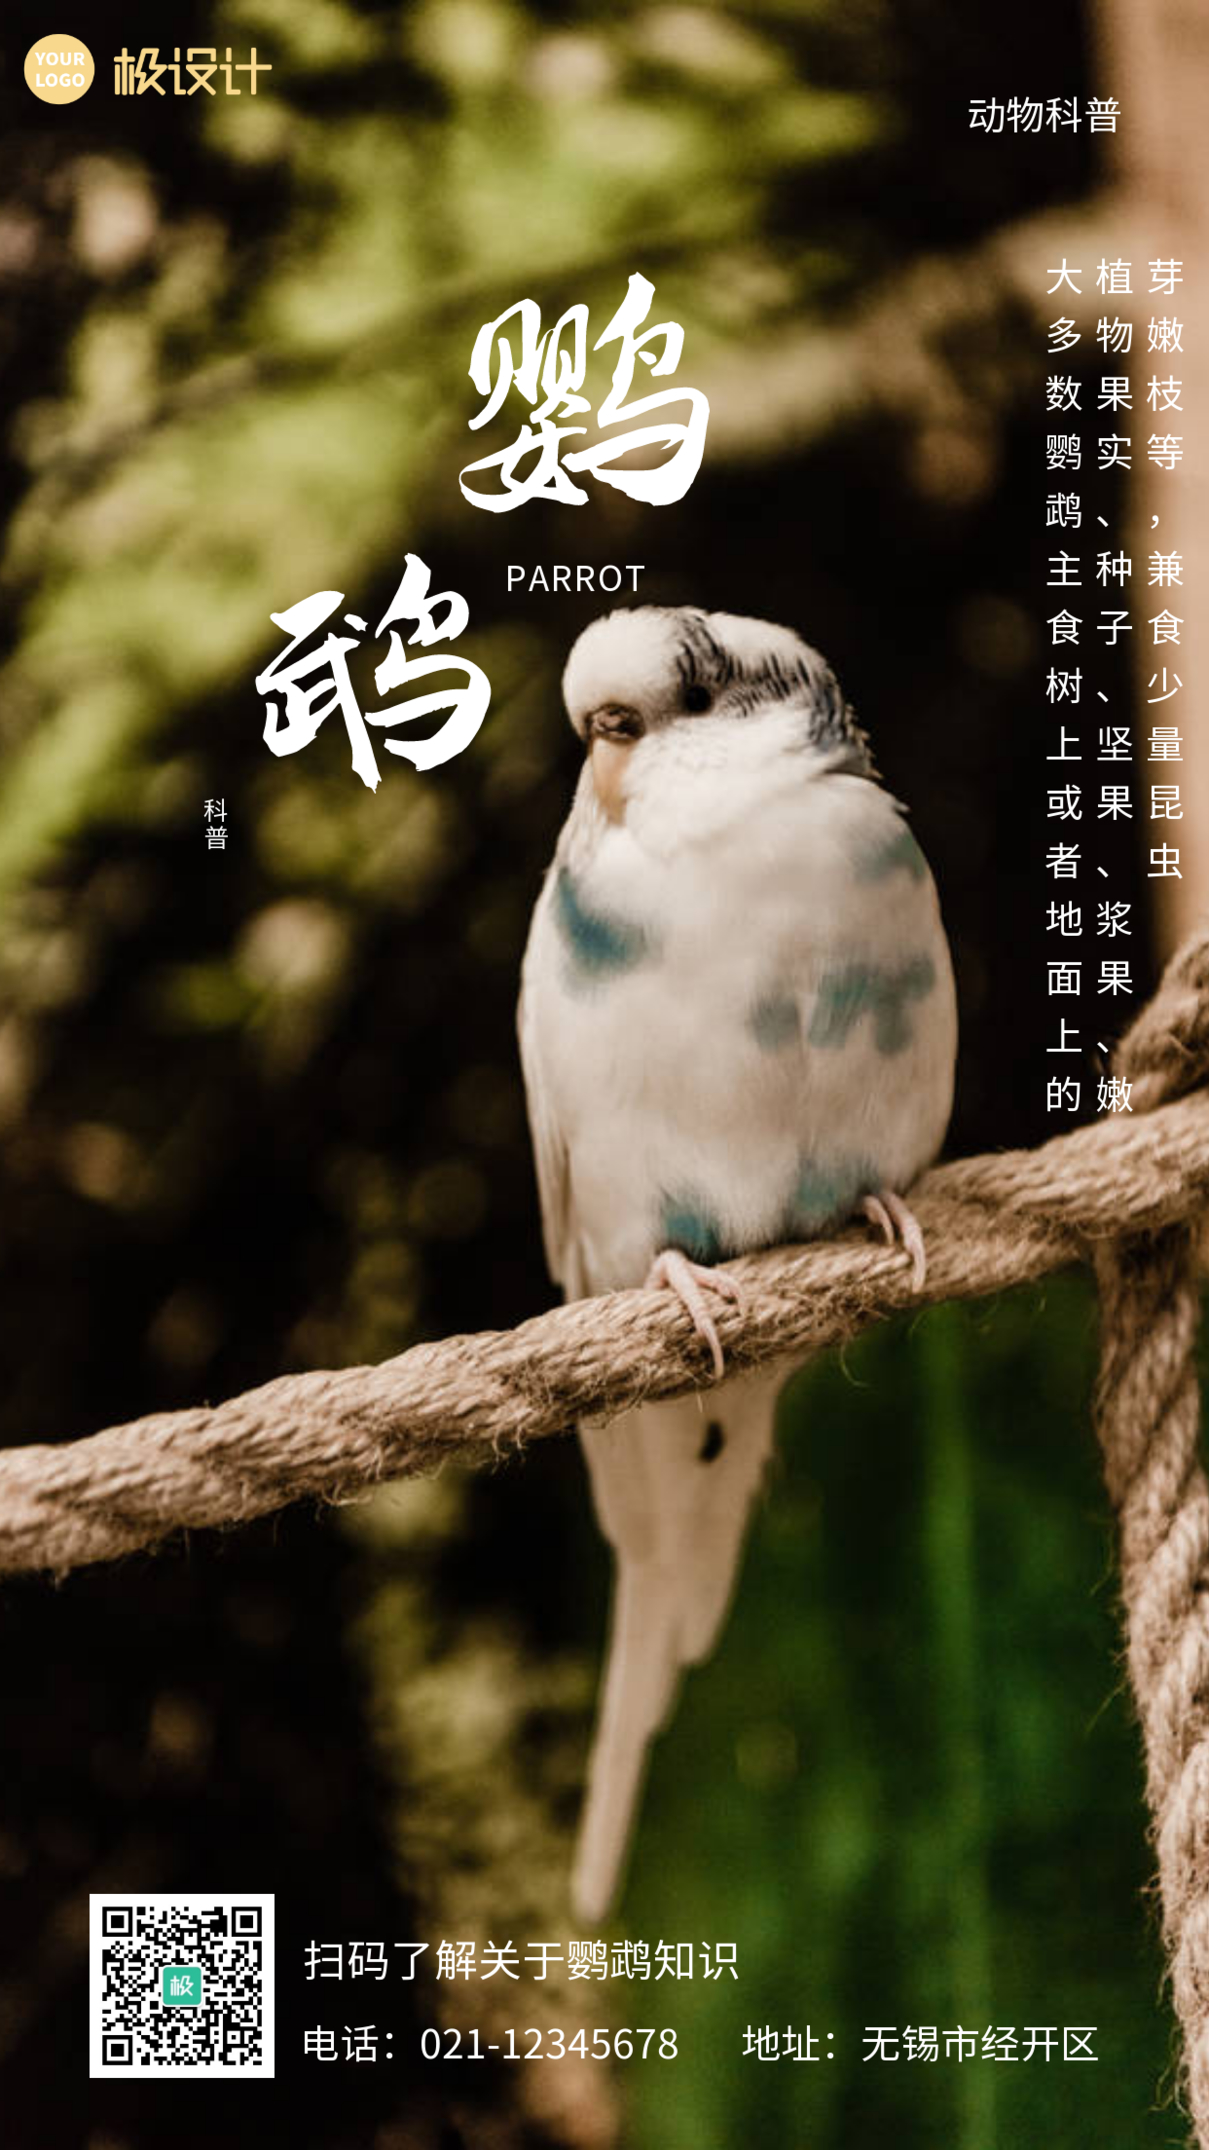 鹦鹉动物科普白色摄影营销简约手机海报